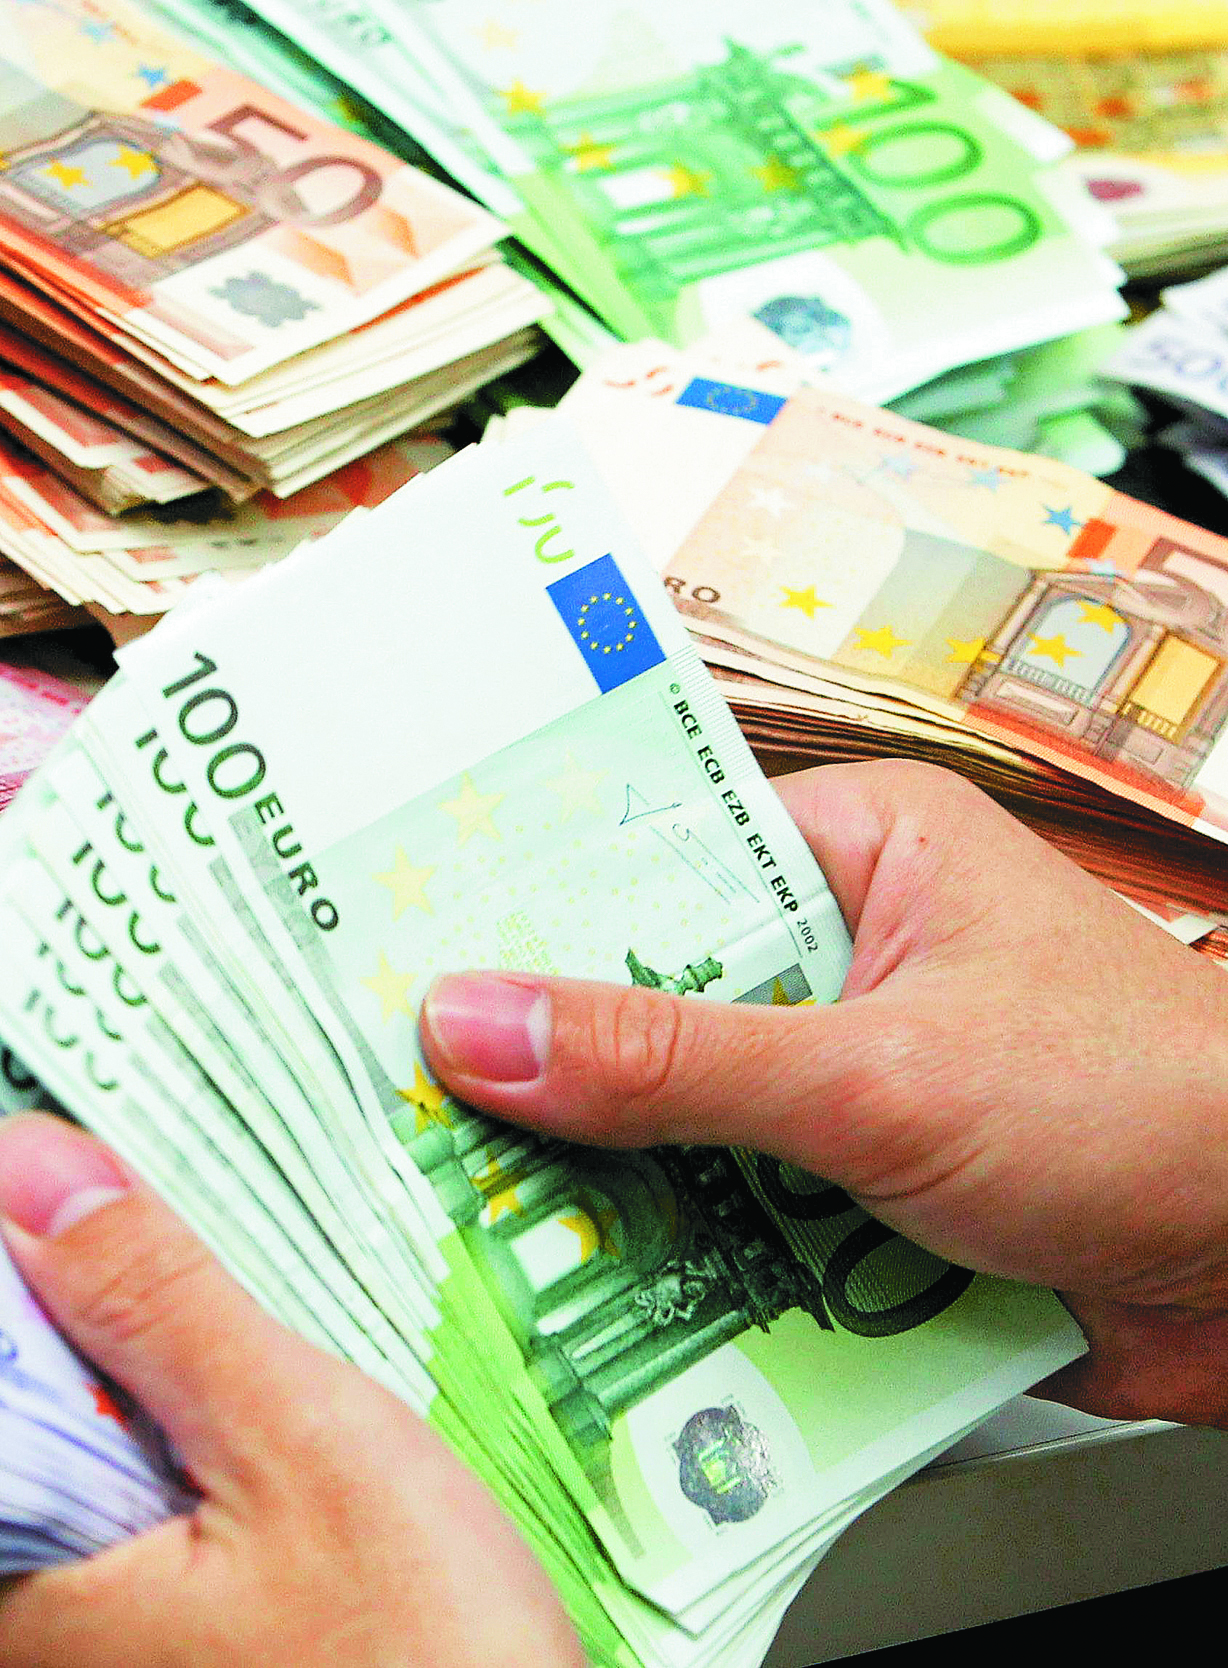 Μειώθηκαν οι χορηγήσεις δανείων σε ιδιώτες τον Σεπτέμβριο | tovima.gr